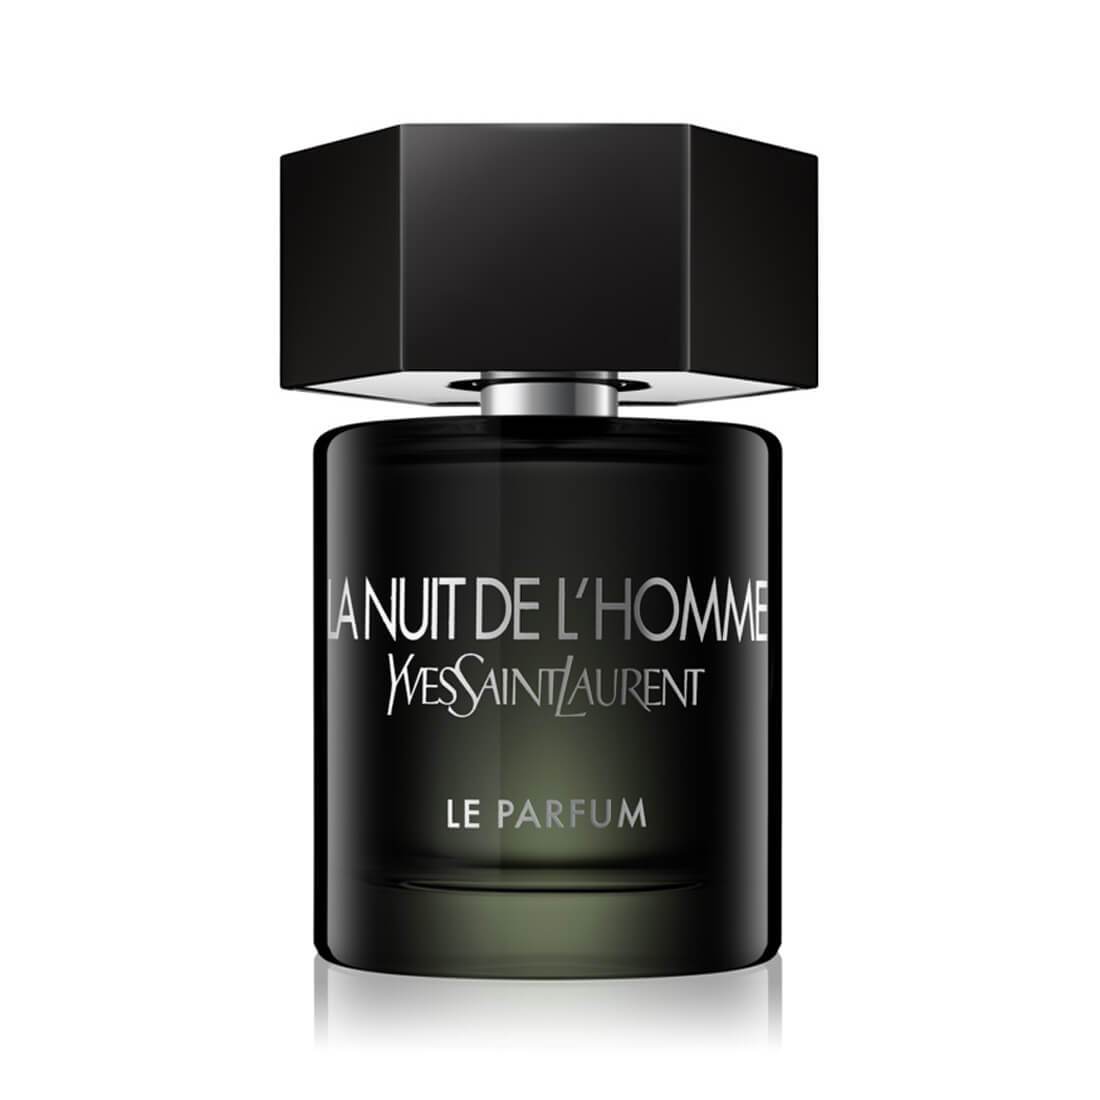 Yves Saint Laurent La Nuit de L'Homme Le Parfum EDP Perfume - 100ml